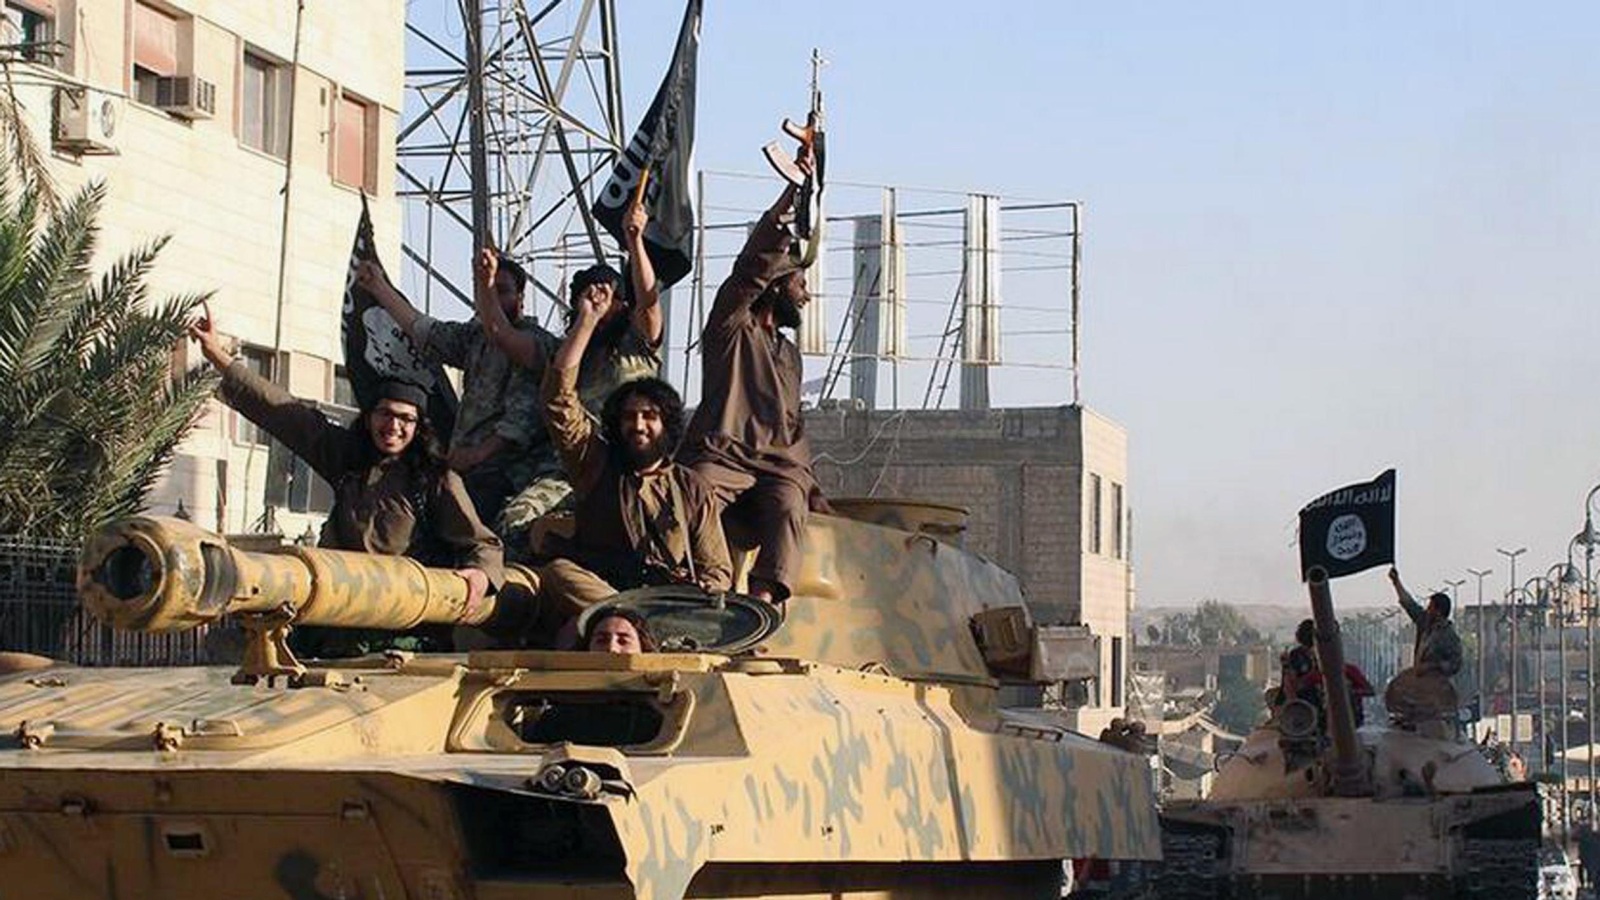 ‪قافلة لمقاتلي تنظيم الدولة الإسلامية أثناء استعراض في شوارع الرقة بسوريا منتصف 2014‬ (رويترز)